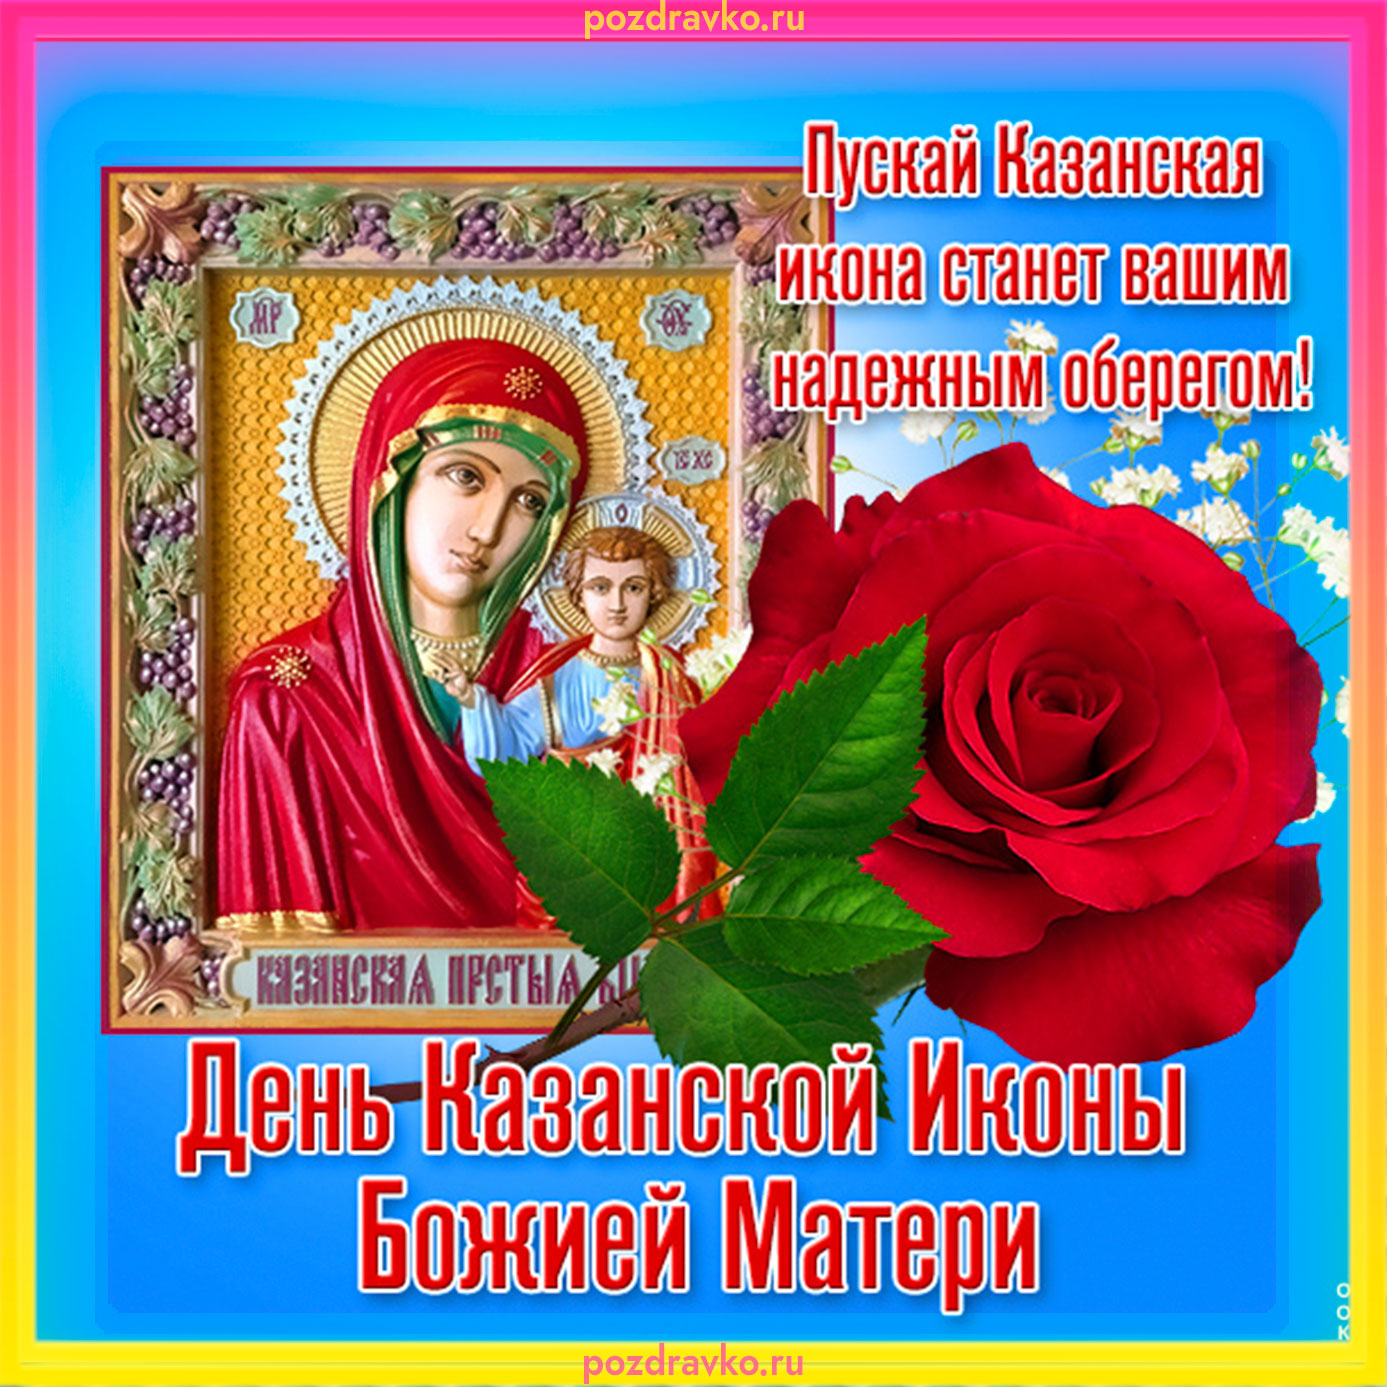 Скачать бесплатно изображения Казанской Божьей Матери